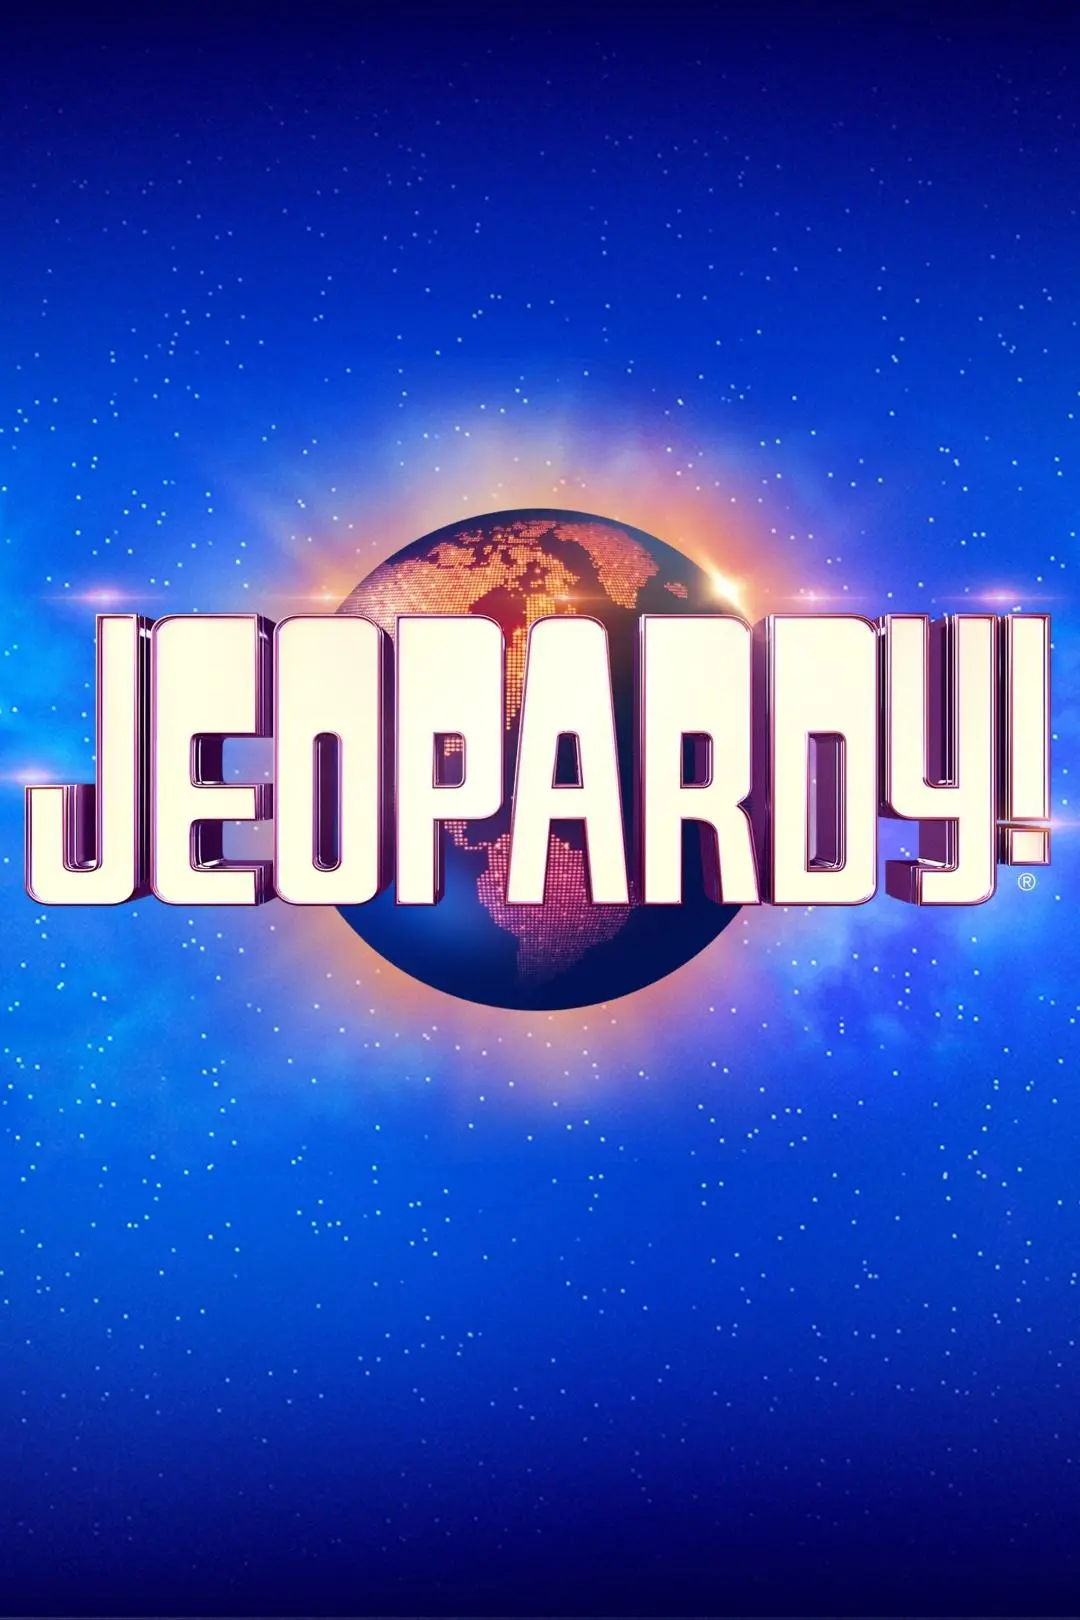 Jeopardy!_peliplat